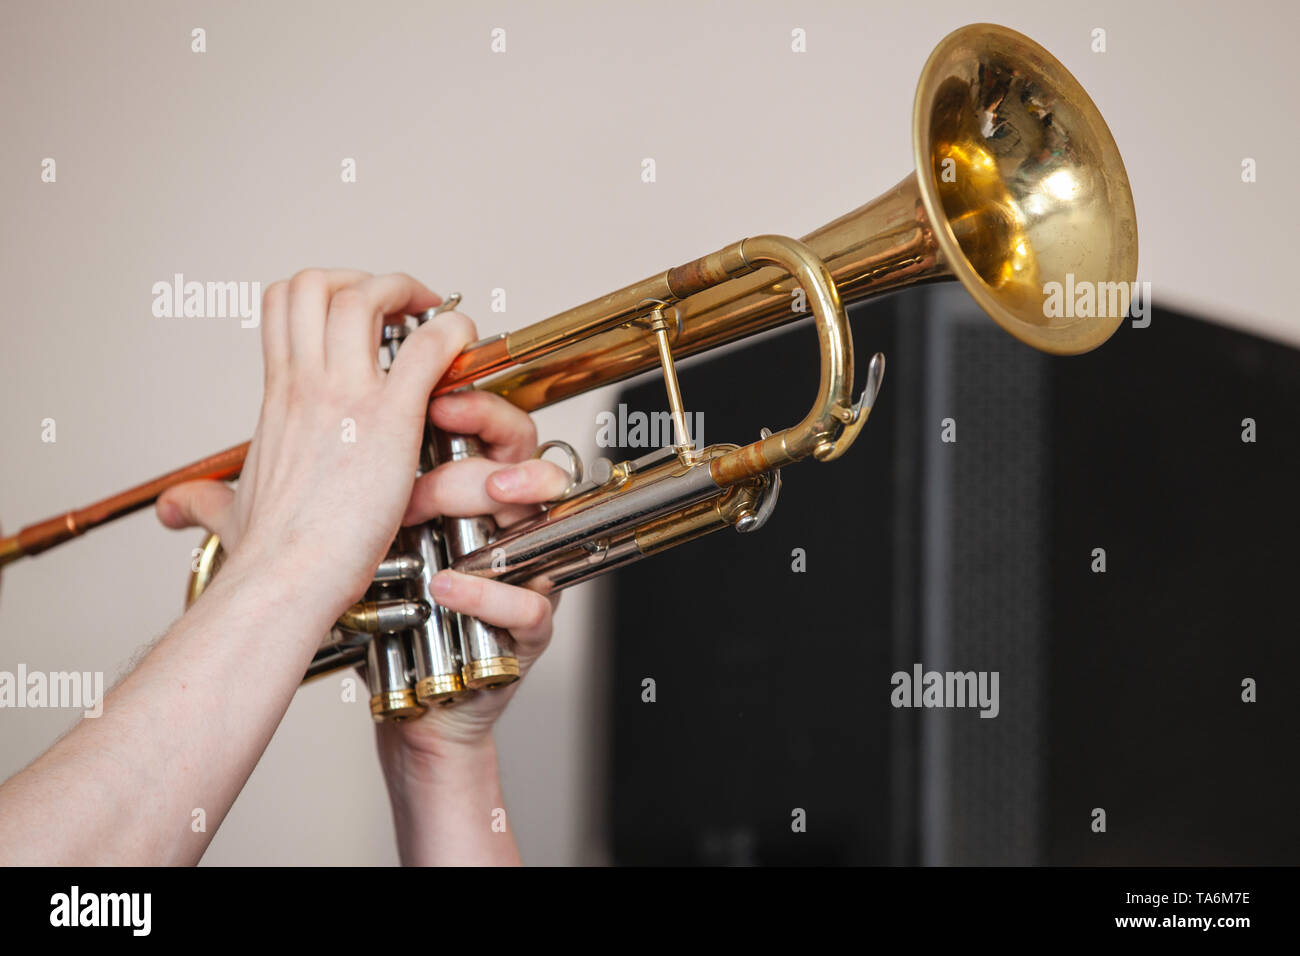 Trompetista de trompeta en las manos. Es un instrumento de viento utilizados comúnmente en los grupos de jazz y clásica Foto de stock